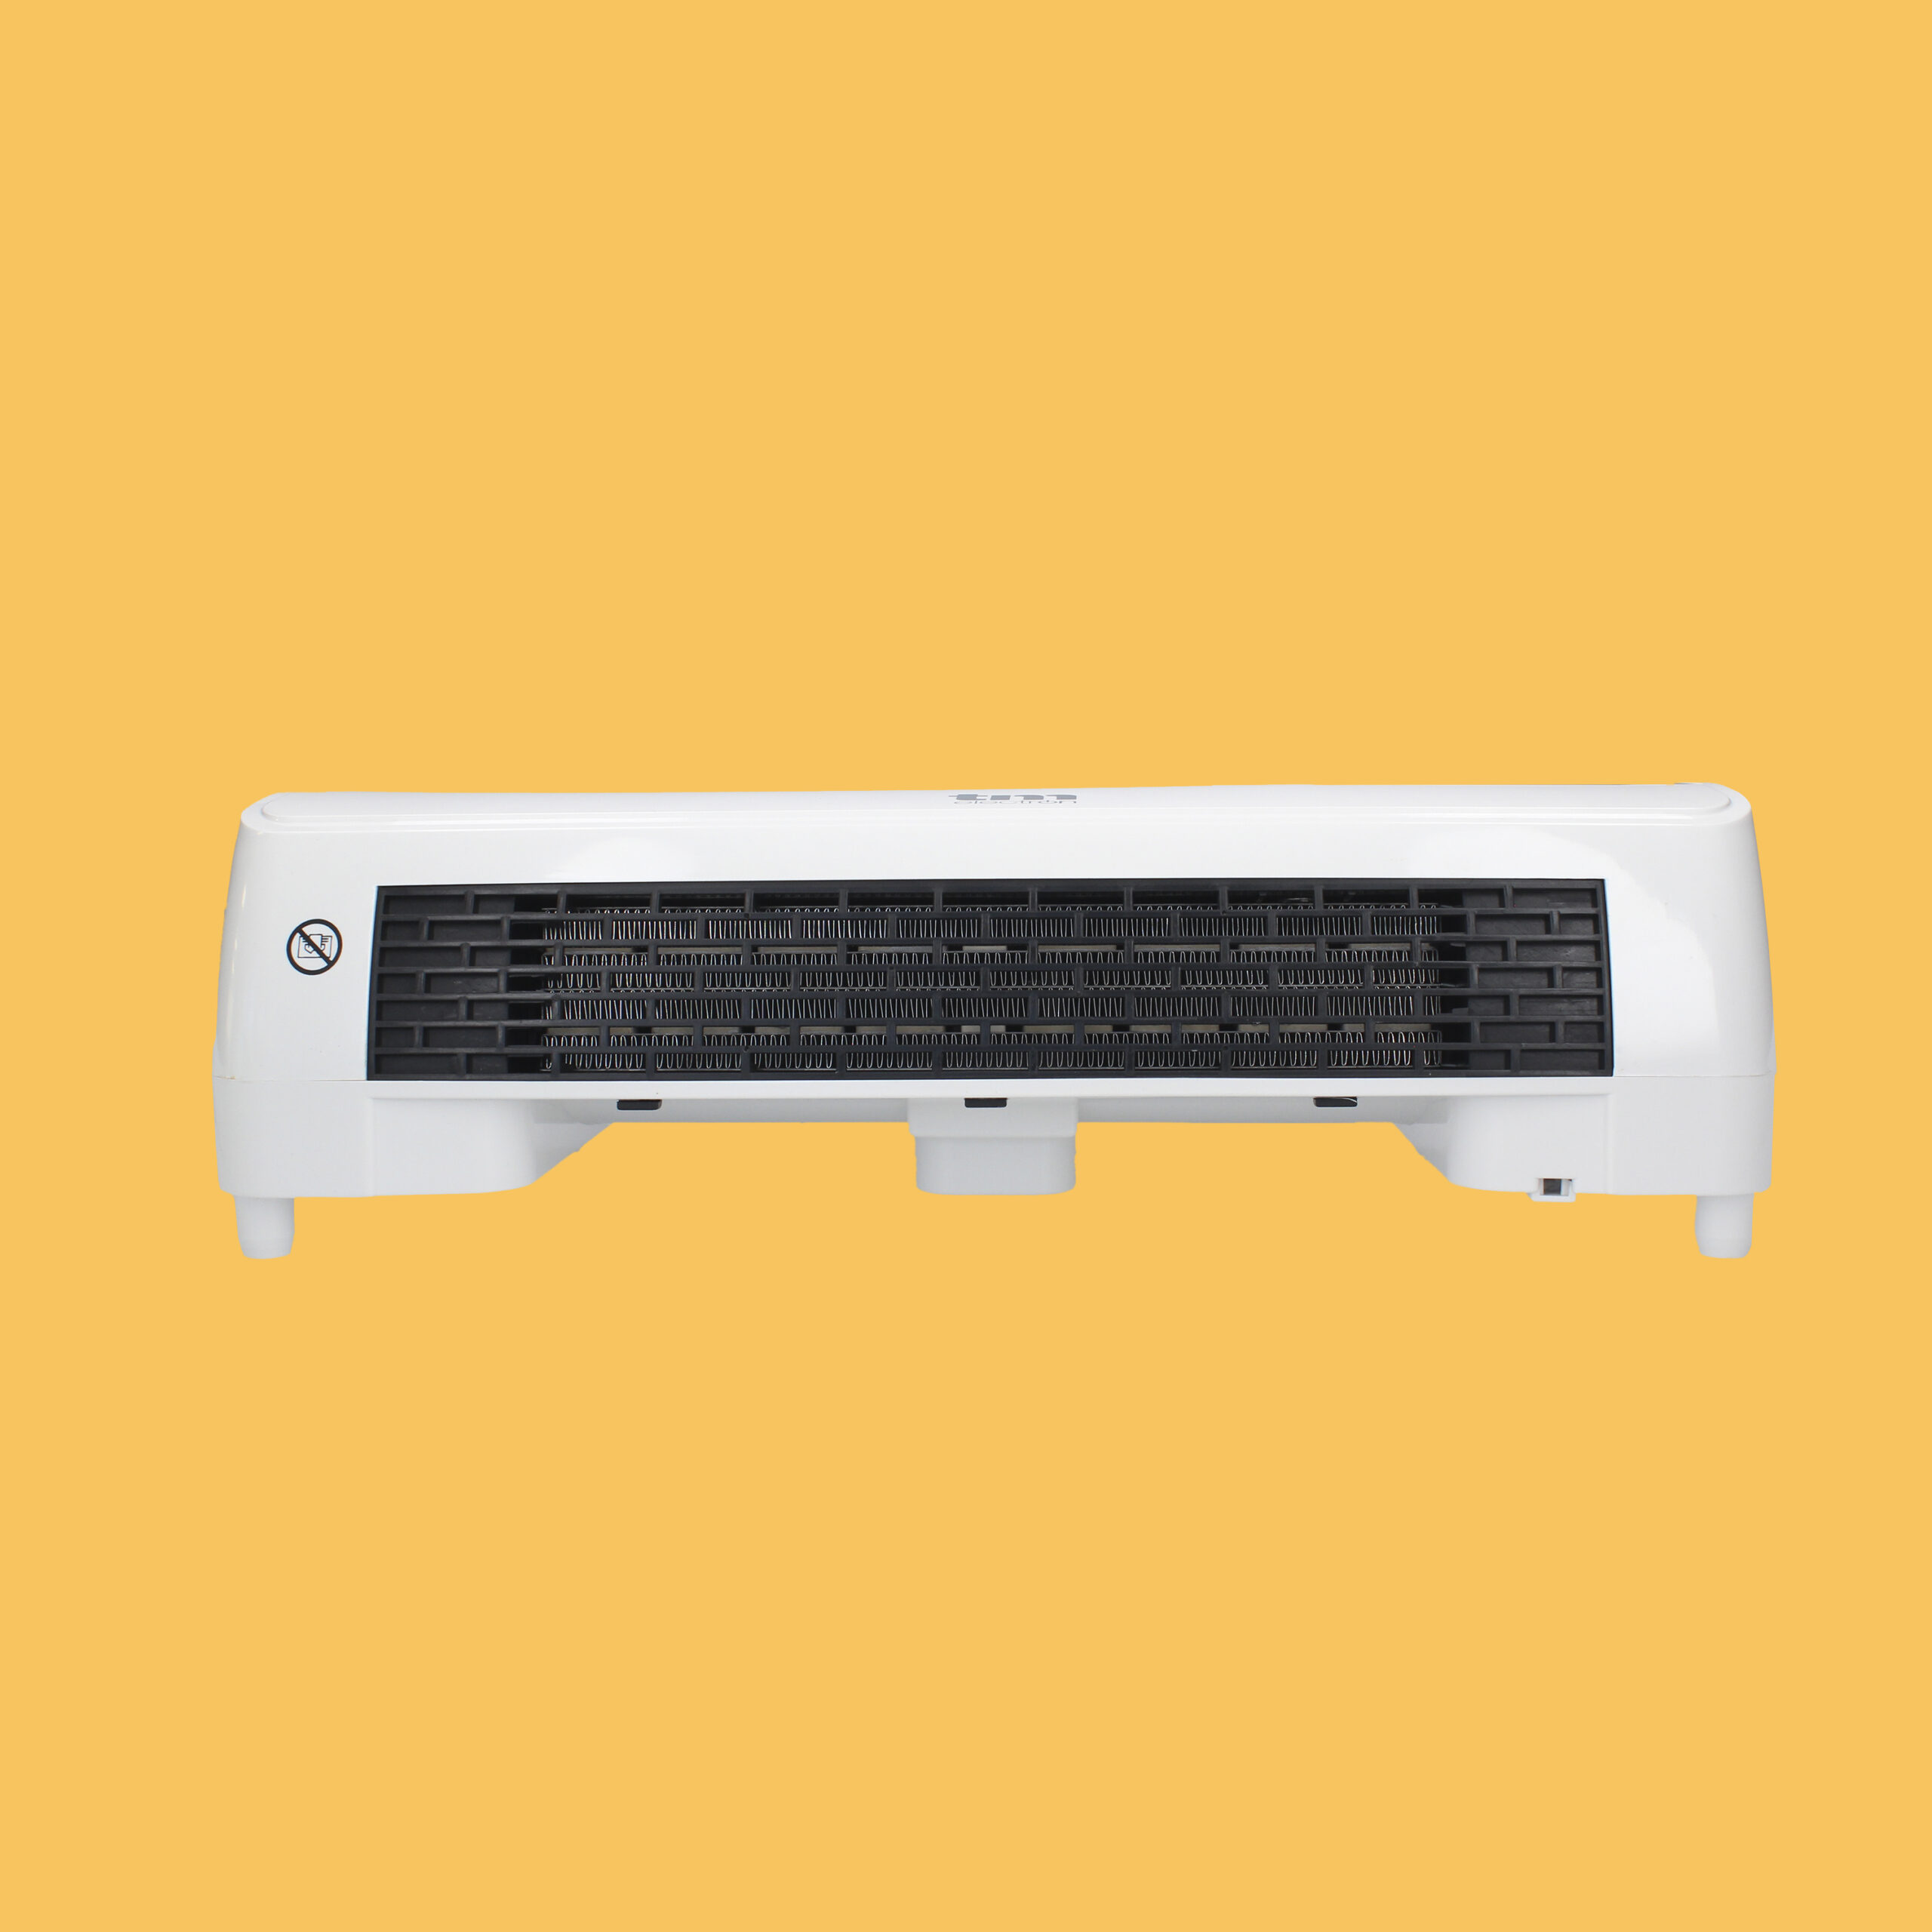 Conveniente calentador de enchufe de pared que ahorra espacio con  tecnología de cerámica avanzada y termostato ajustable US PLUG JAMW  Sencillez